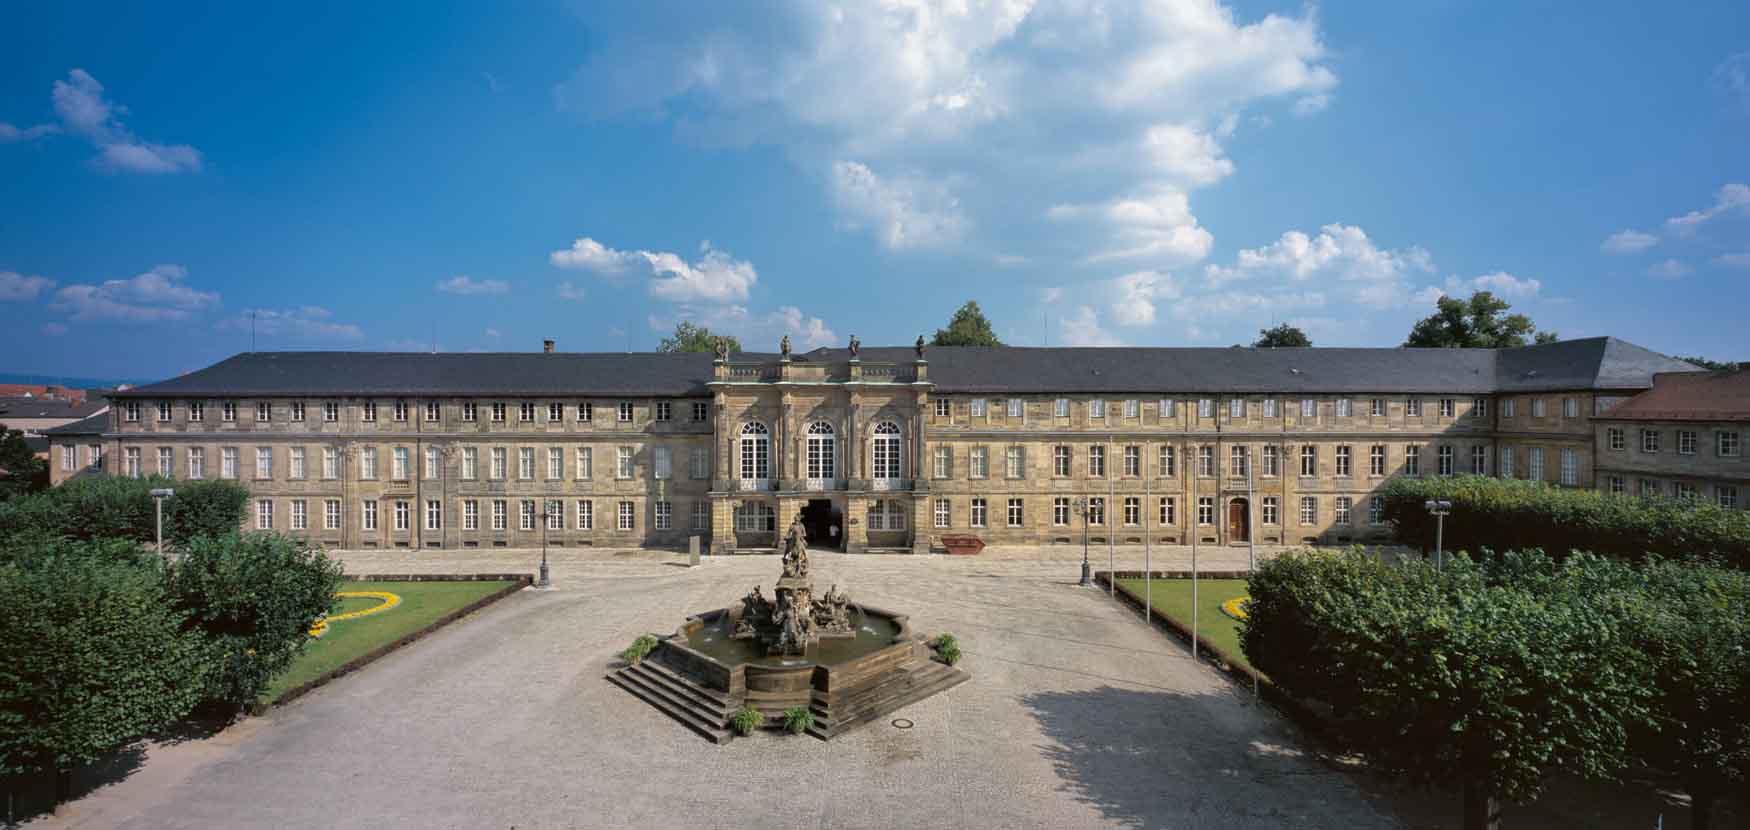 Bayreuth_Neues Schloss_Corps de logis mit Markgrafenbrunnen_DE00003